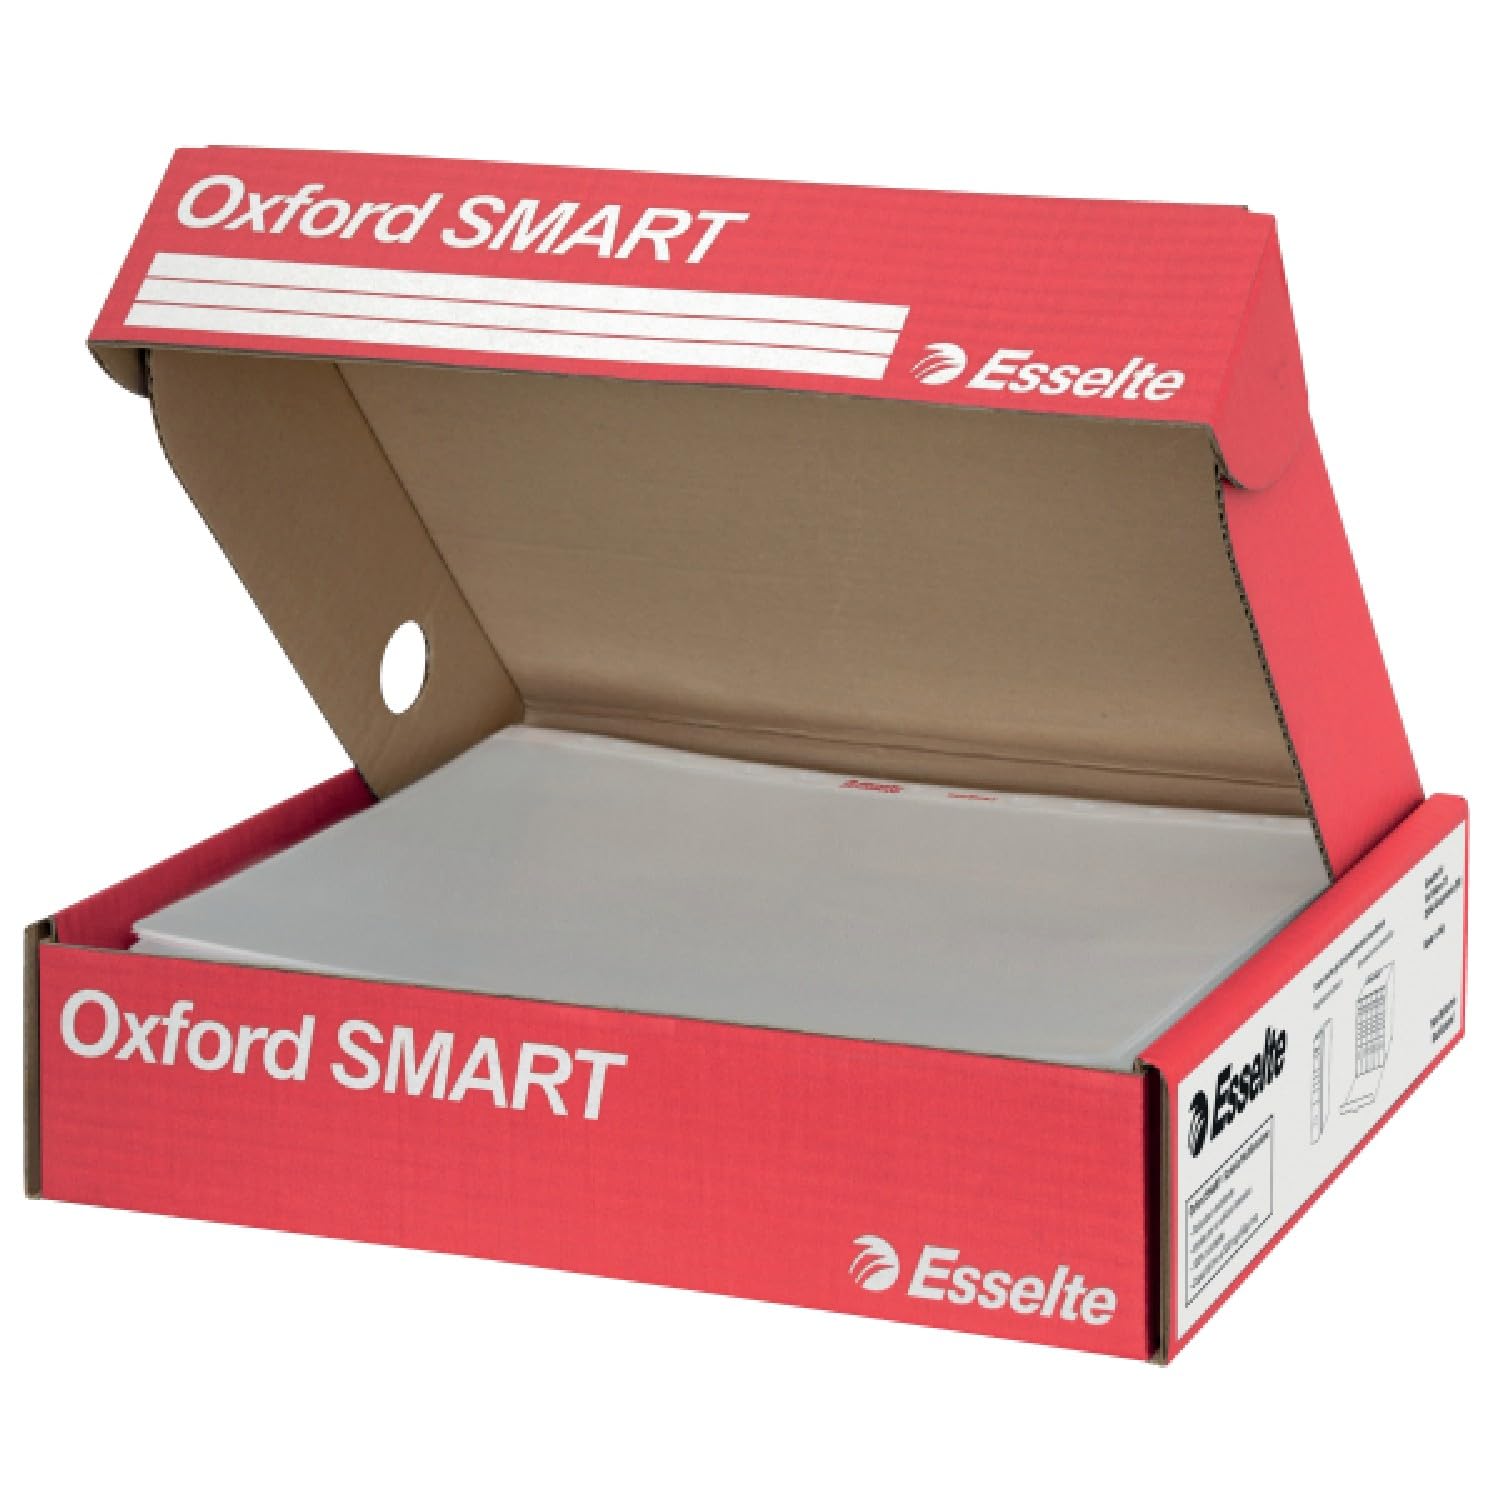 Esselte Oxford Smart, Deluxe-Briefumschläge, Protokollformat, antireflektierend, mit Mehrzweckbox, geeignet für Zuhause und Büro, 6 Packungen mit 50 Stück, 391098600